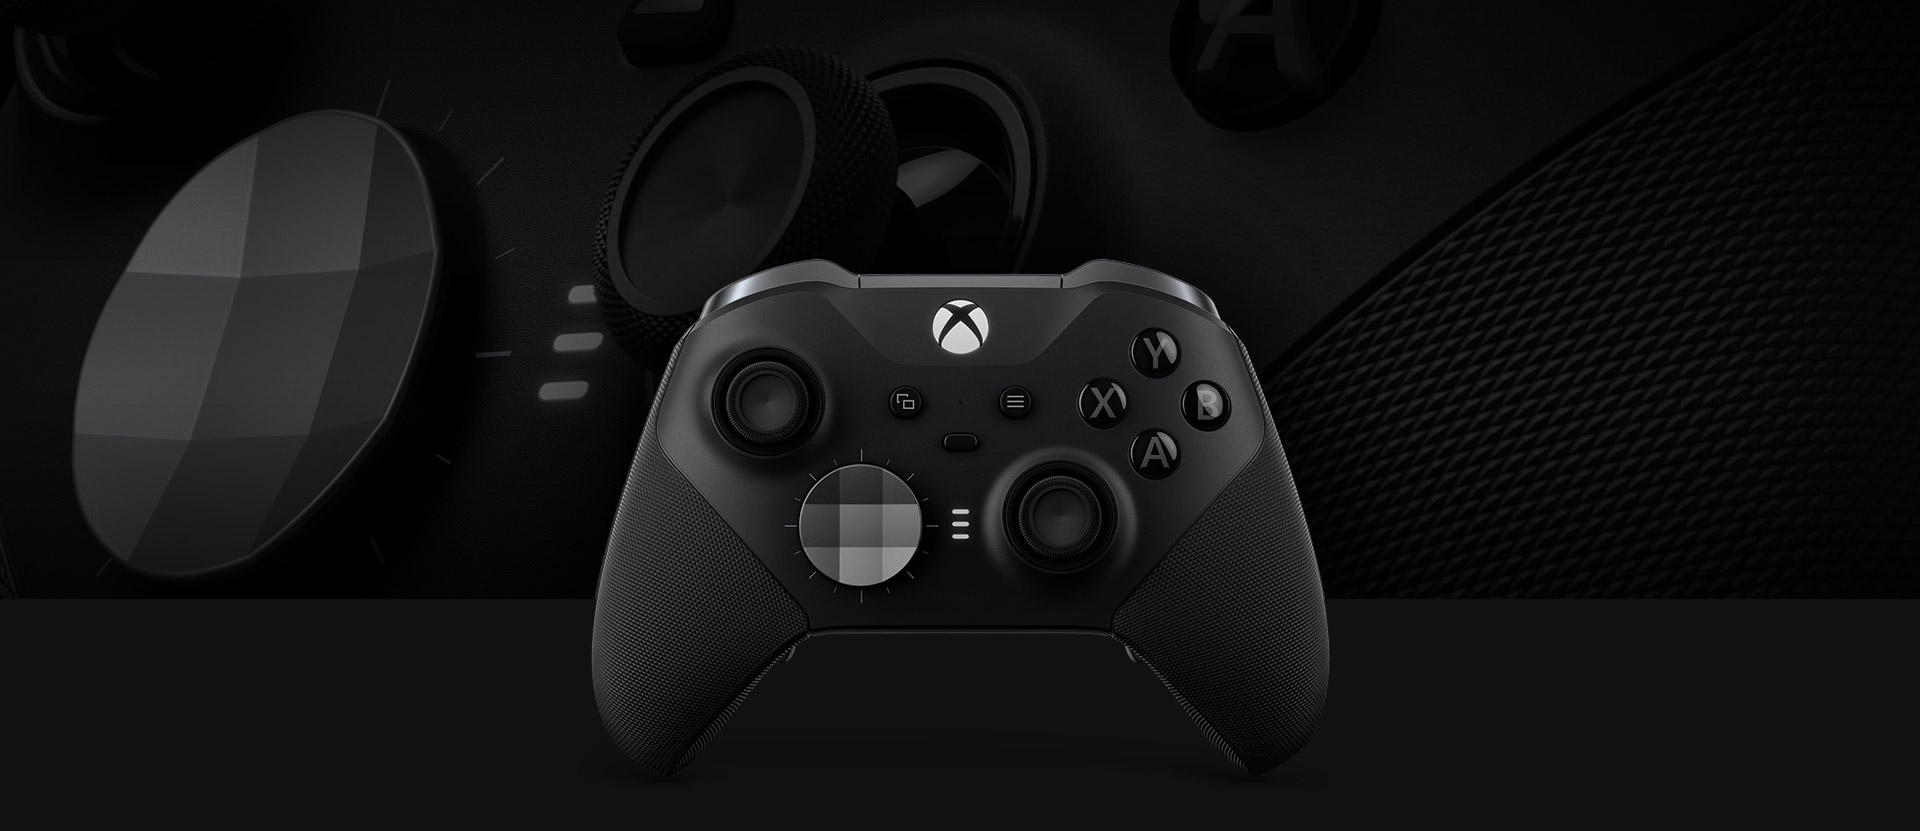 Vooraanzicht van de Xbox Elite draadloze controller Series 2 met een close-up van de controller op de achtergrond